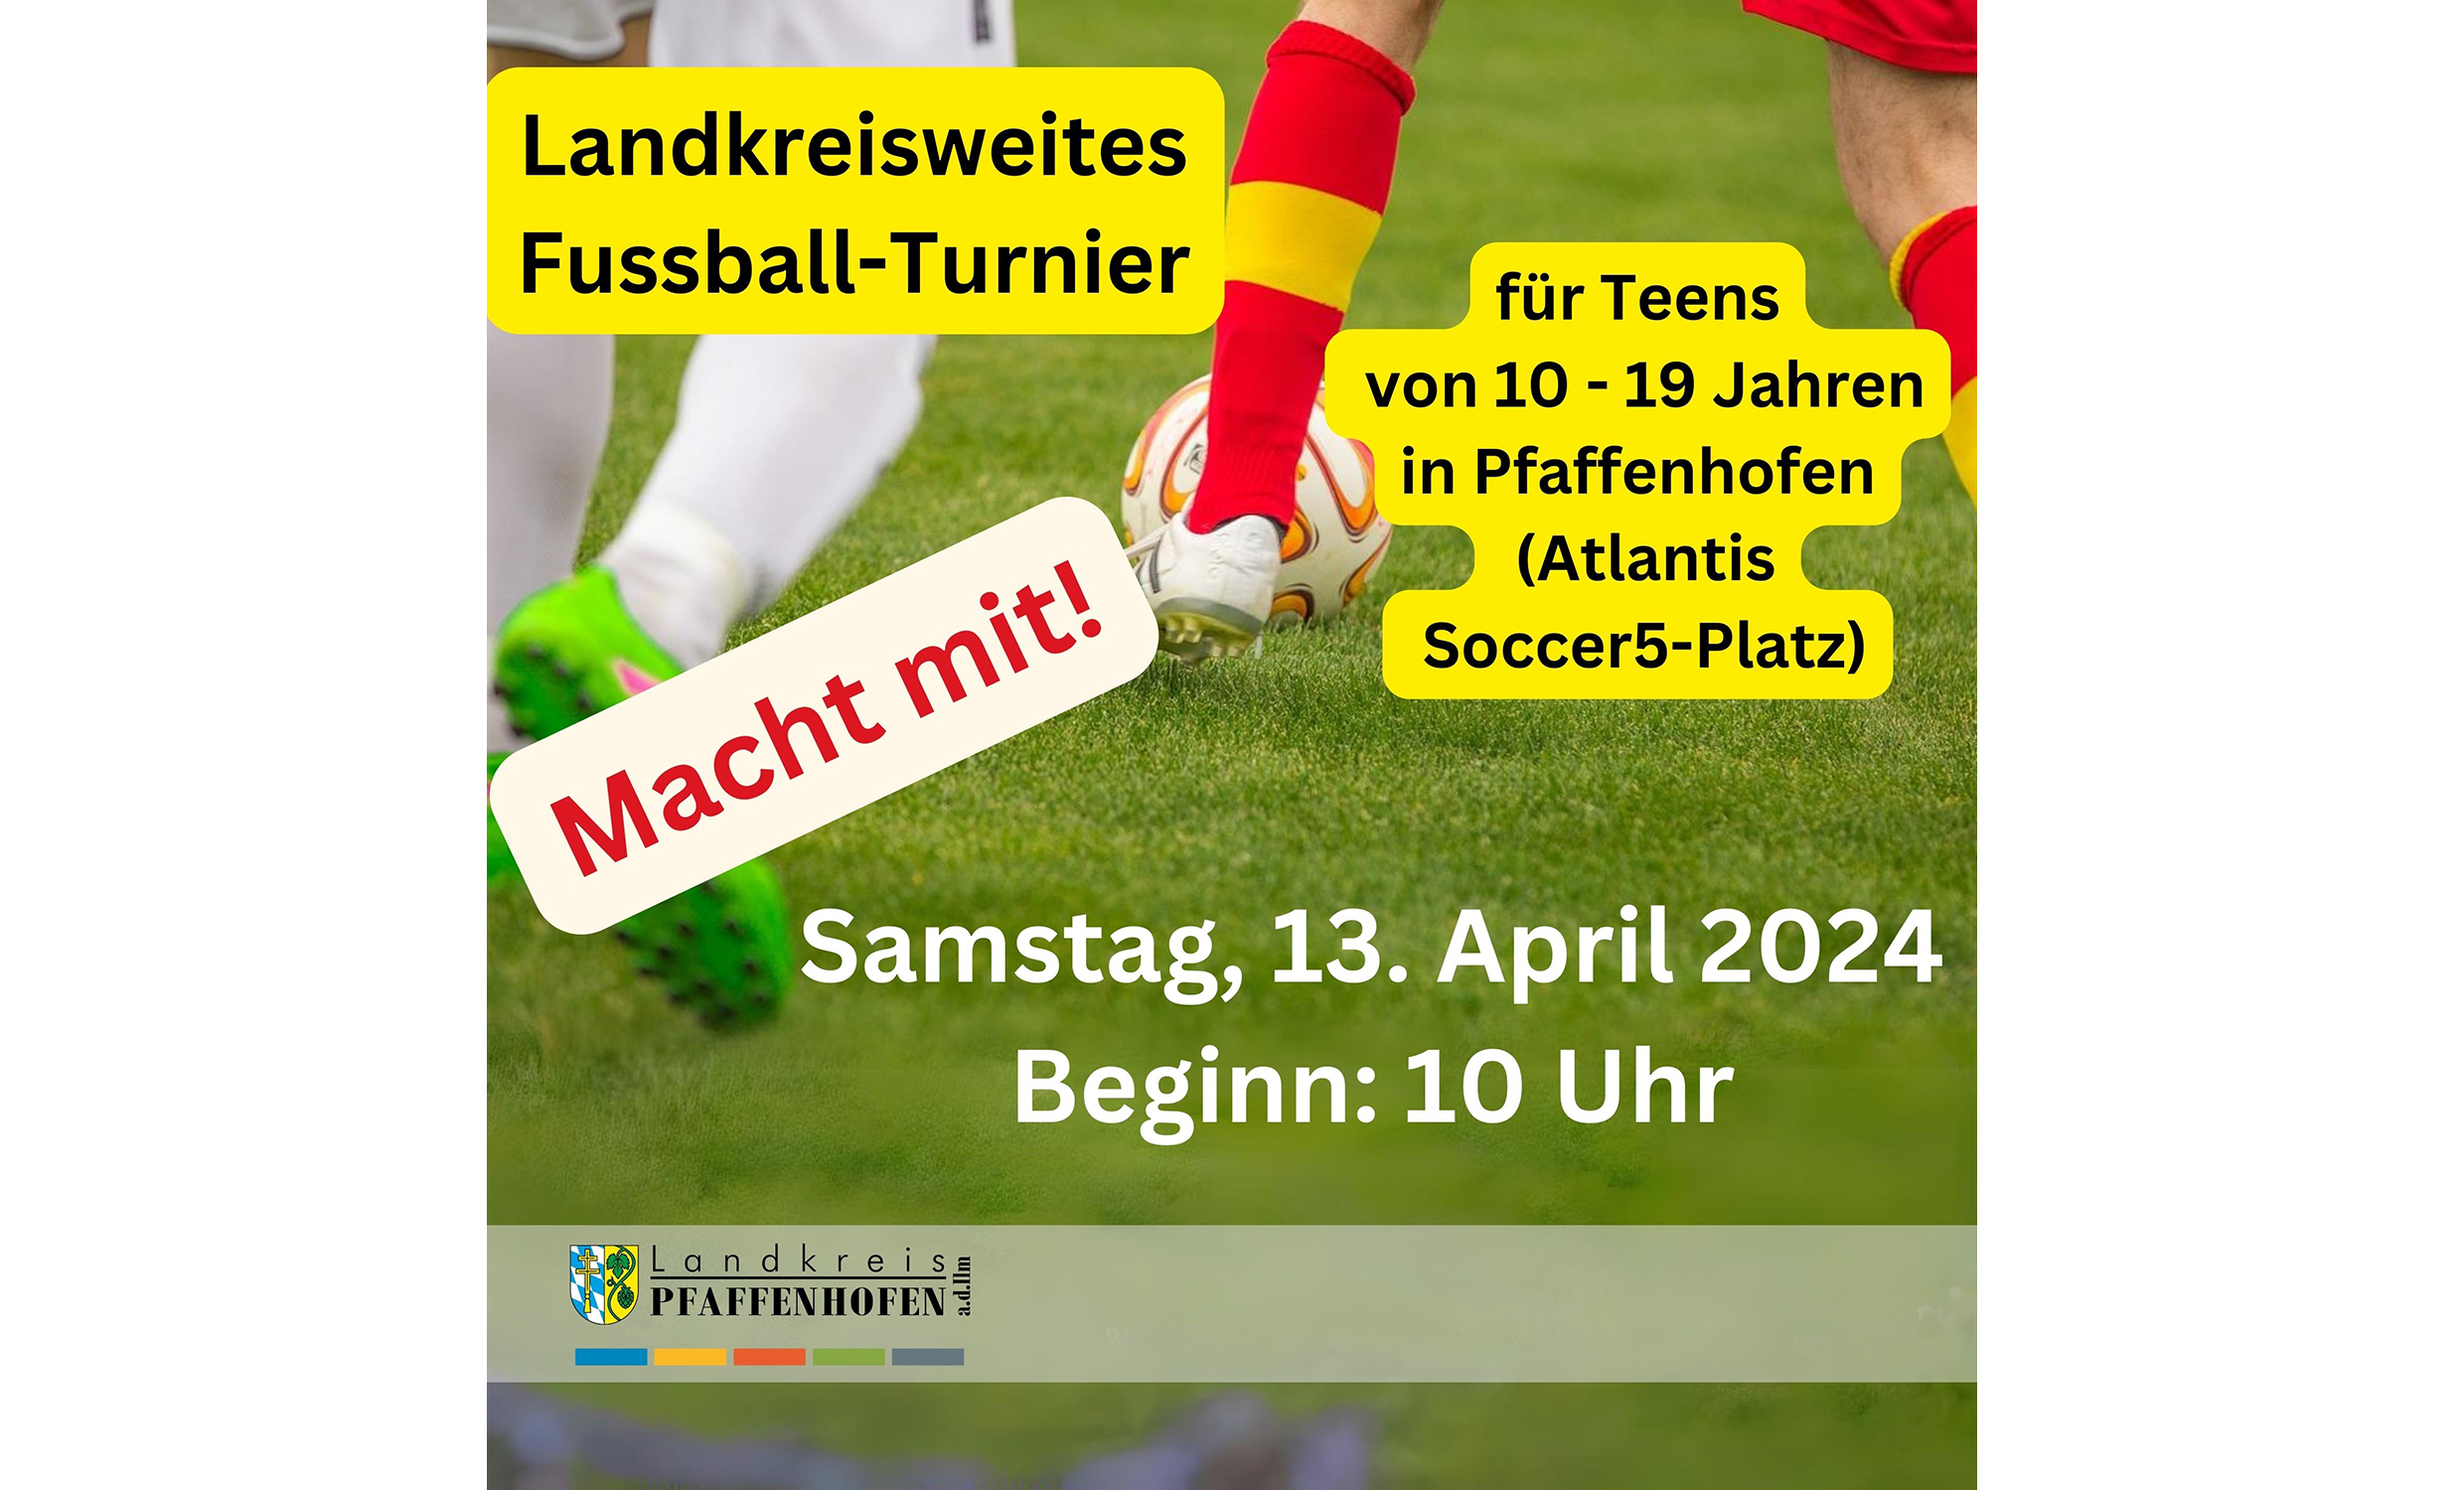 Landkreisweites Fußballturnier für Kinder und Jugendliche am 13. April